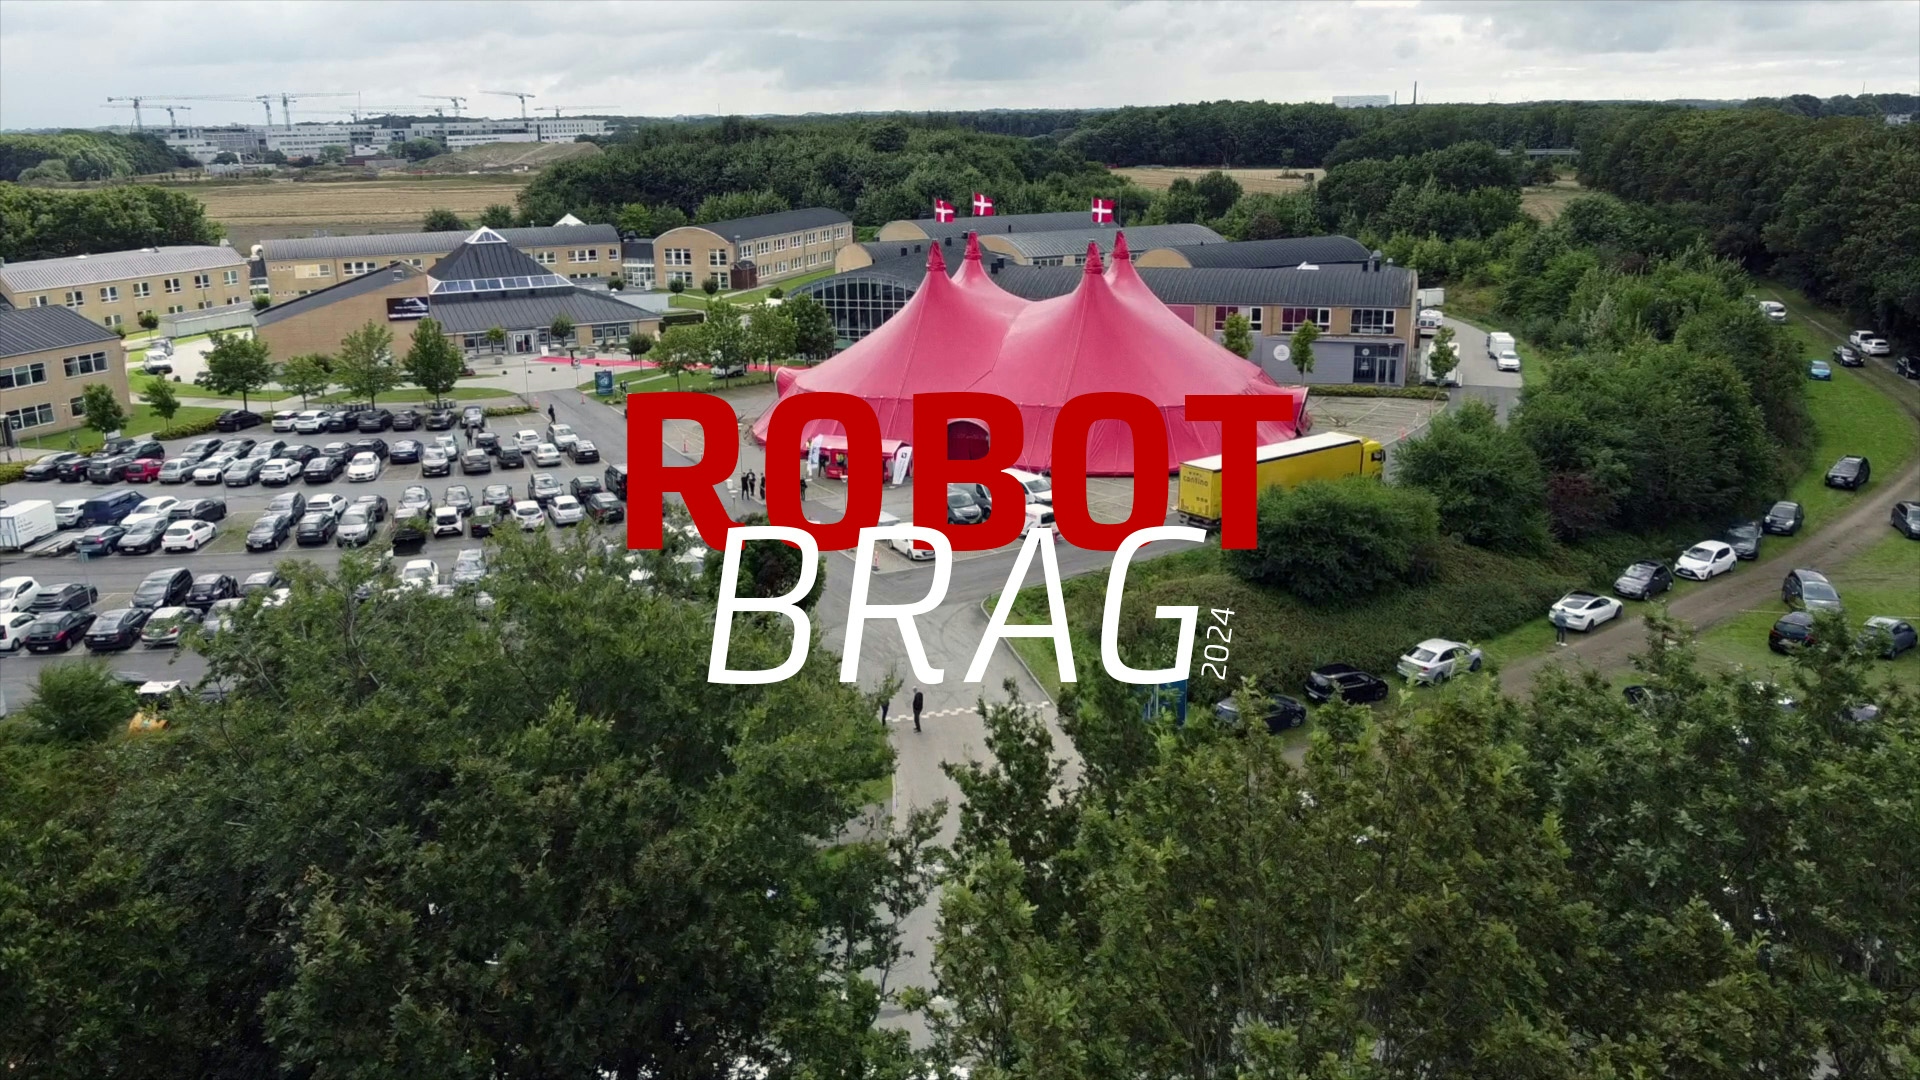 Foto af ROBOTBRAGS cirkustelt med teksten "ROBOTBRAG 2024".